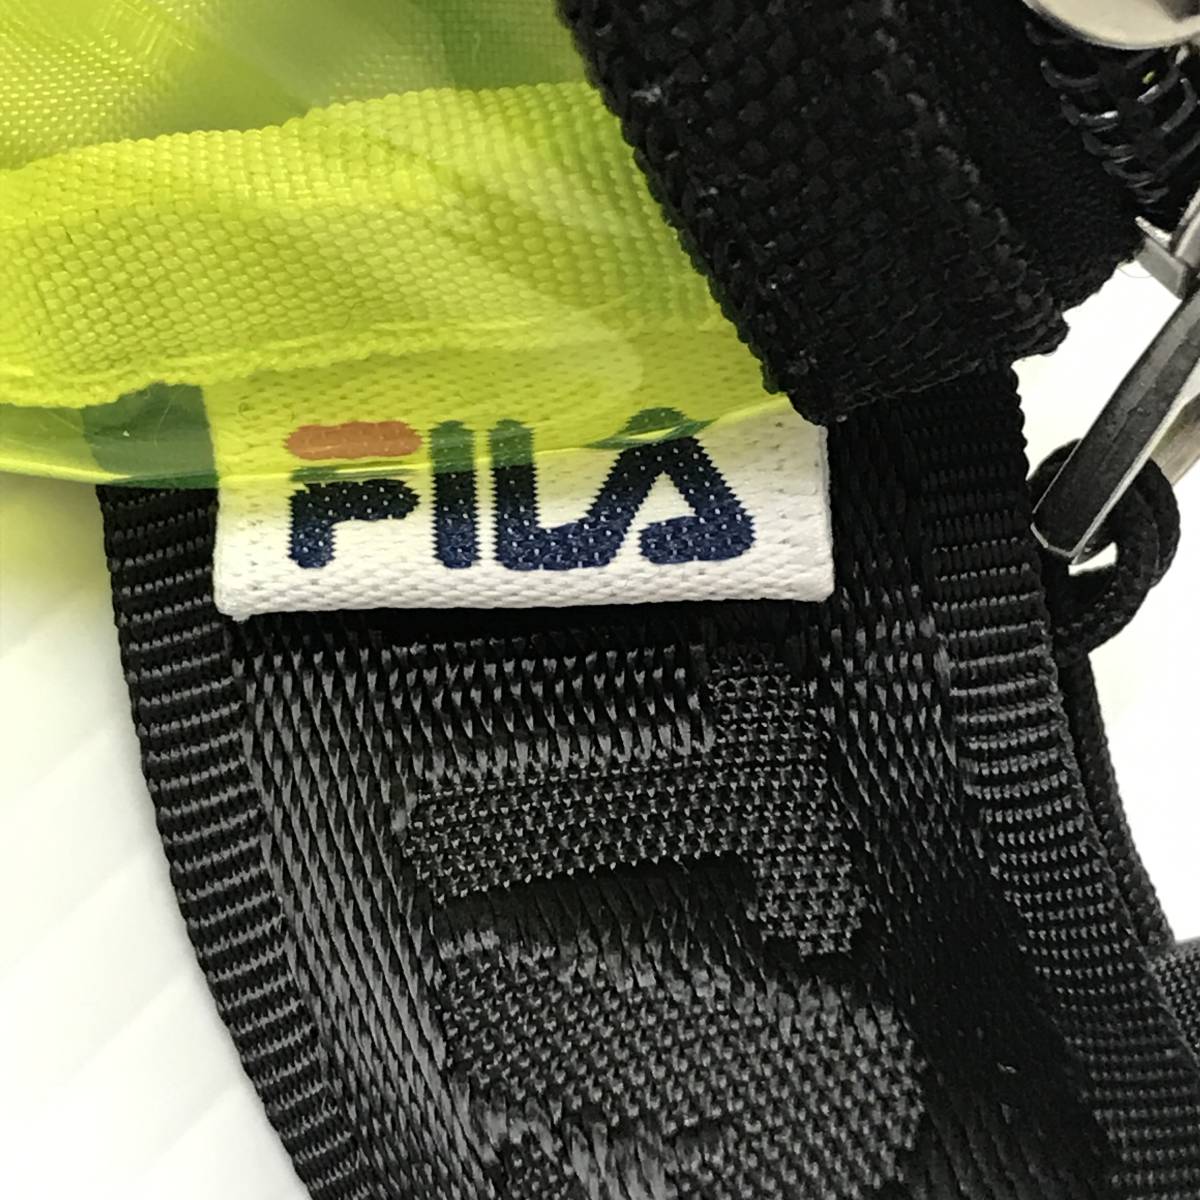  не использовался товар FILA желтый сумка "body" rete e-s мужской прозрачный сумка сумка-пояс прозрачный наклонный .. пляж бассейн бренд каркас 